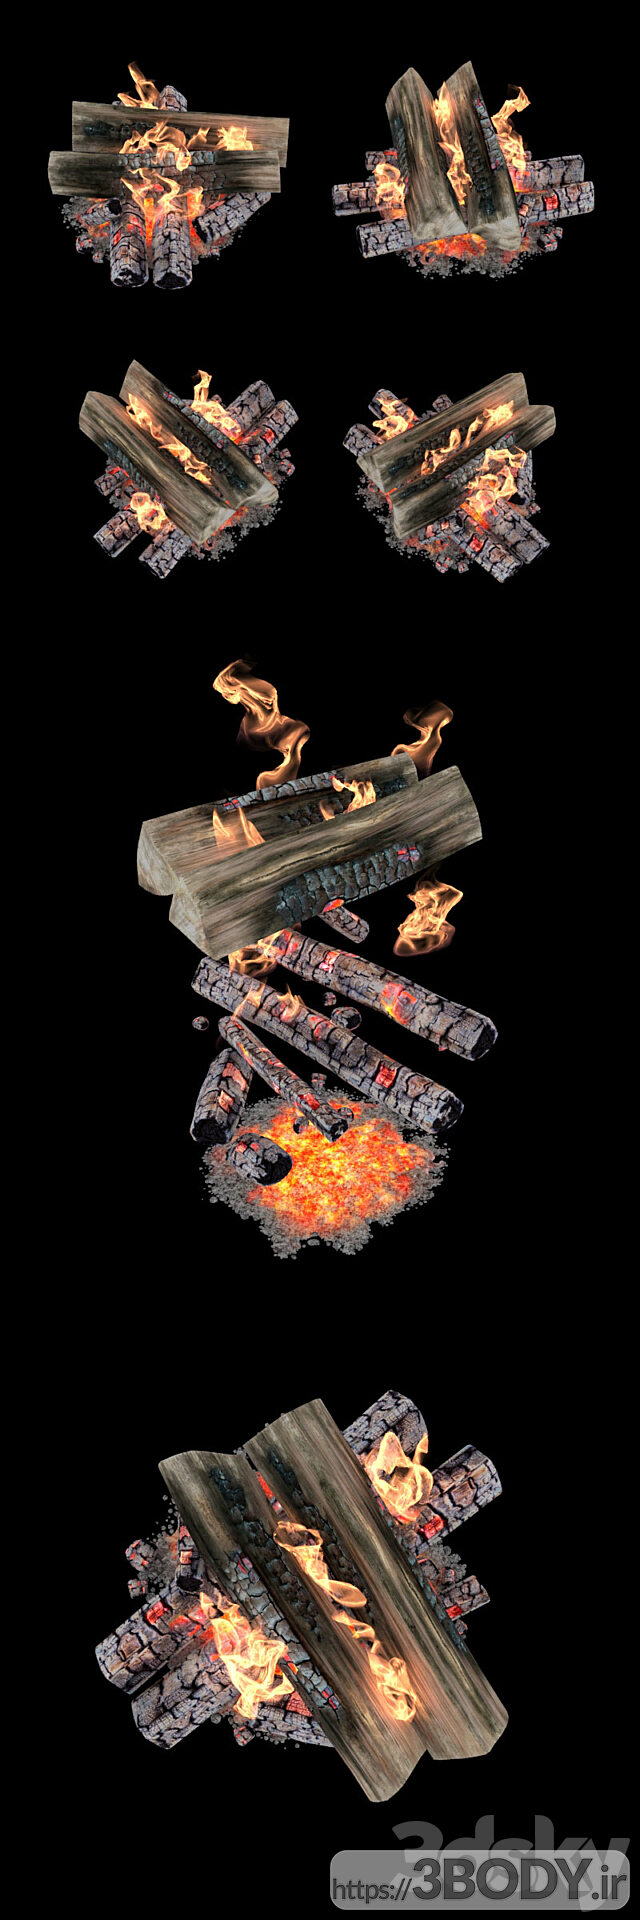 مدل سه بعدی هیزم و آتش عکس 3